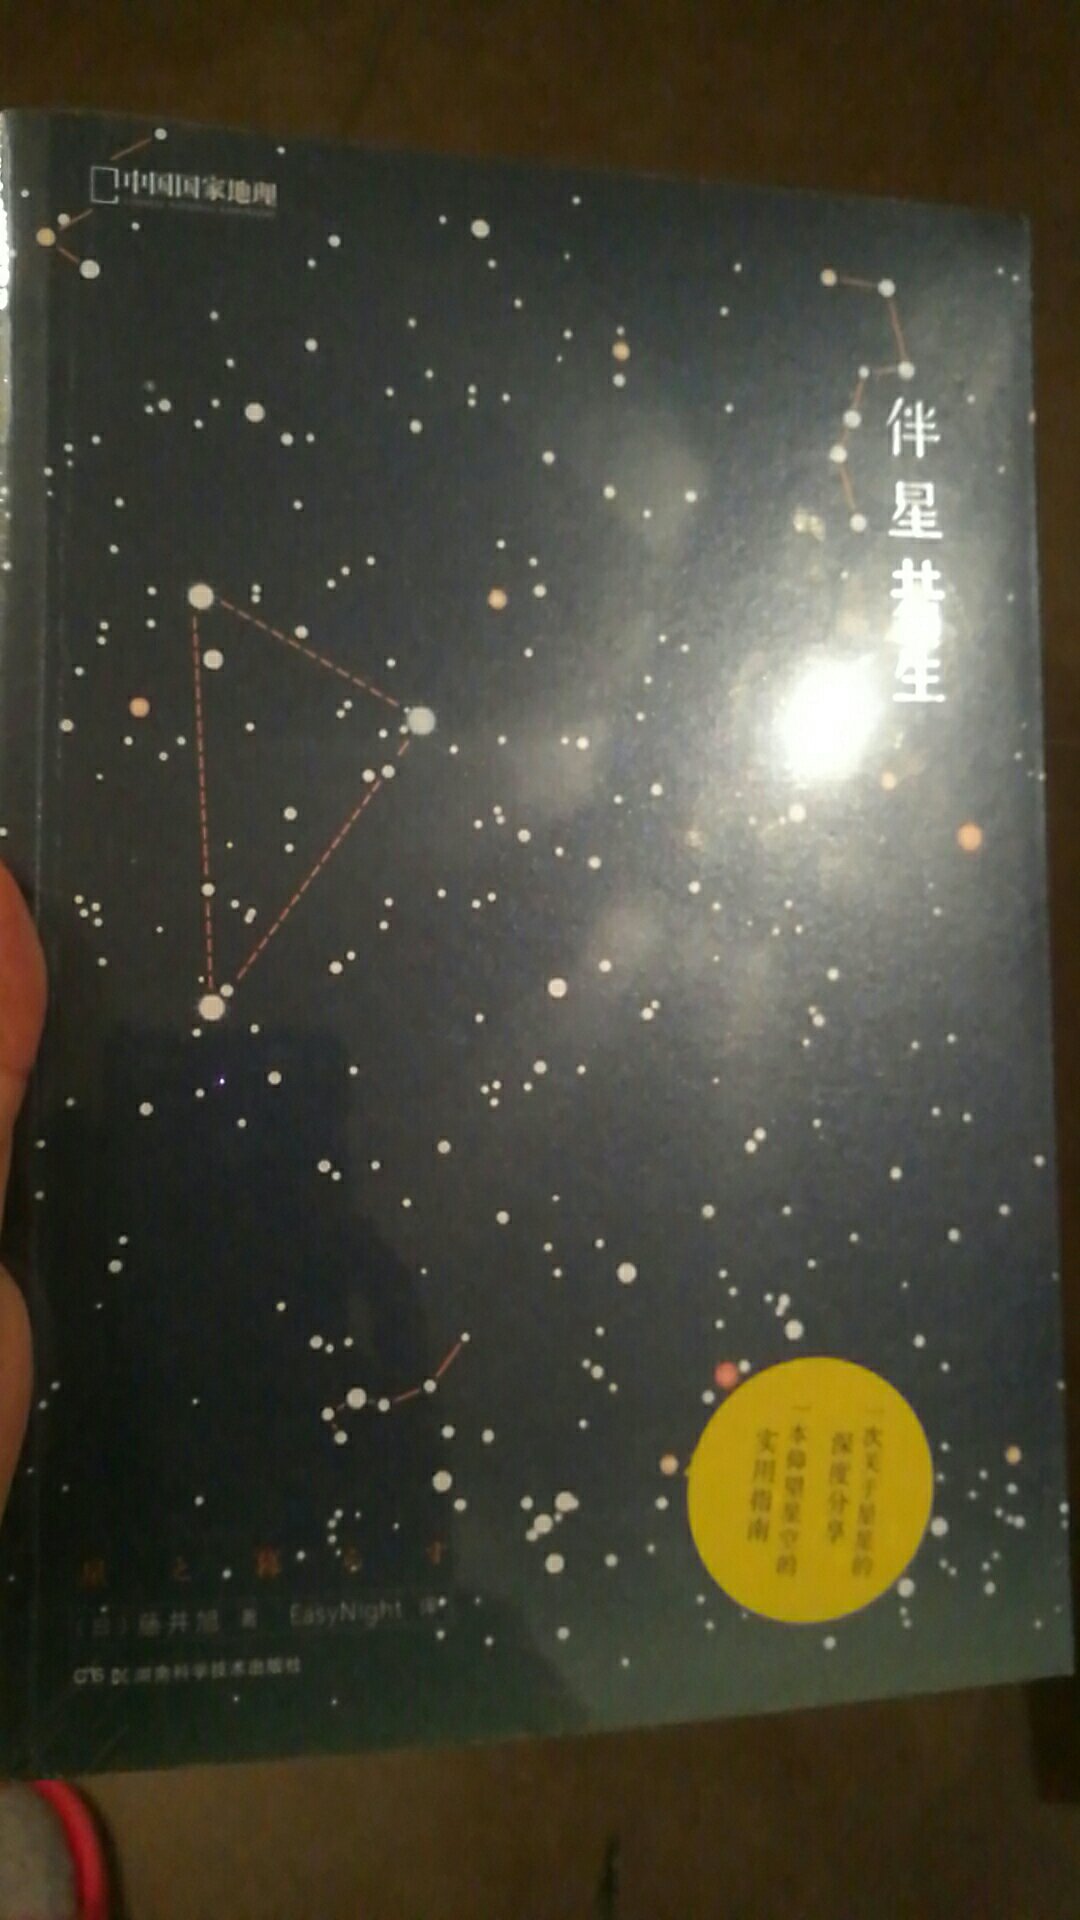 已经收了伴月，当然就得星星陪伴啦。很漂亮的书，很喜欢未知的宇宙，让我们一起去探索吧。